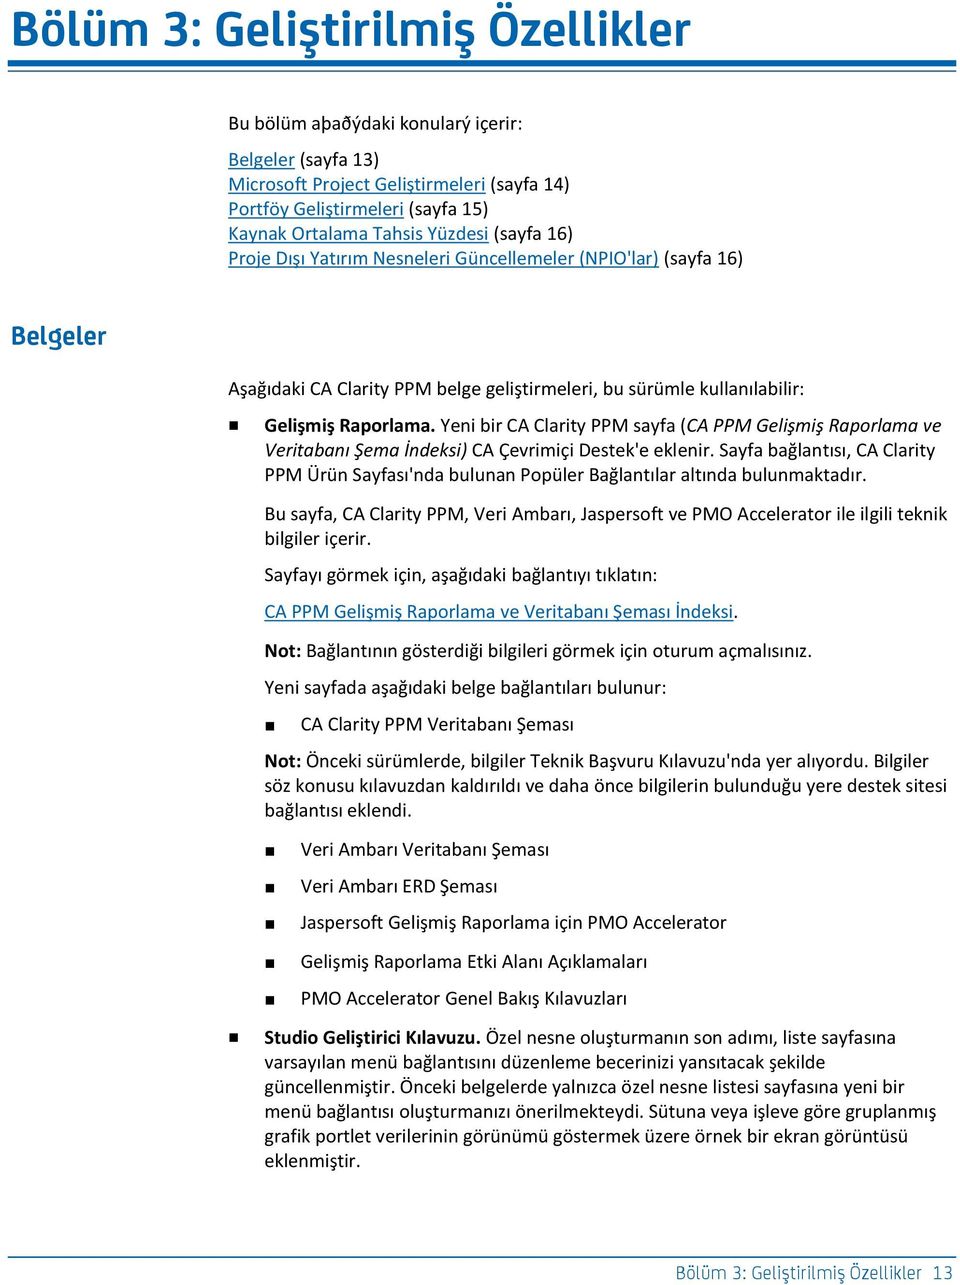 Yeni bir CA Clarity PPM sayfa (CA PPM Gelişmiş Raporlama ve Veritabanı Şema İndeksi) CA Çevrimiçi Destek'e eklenir.